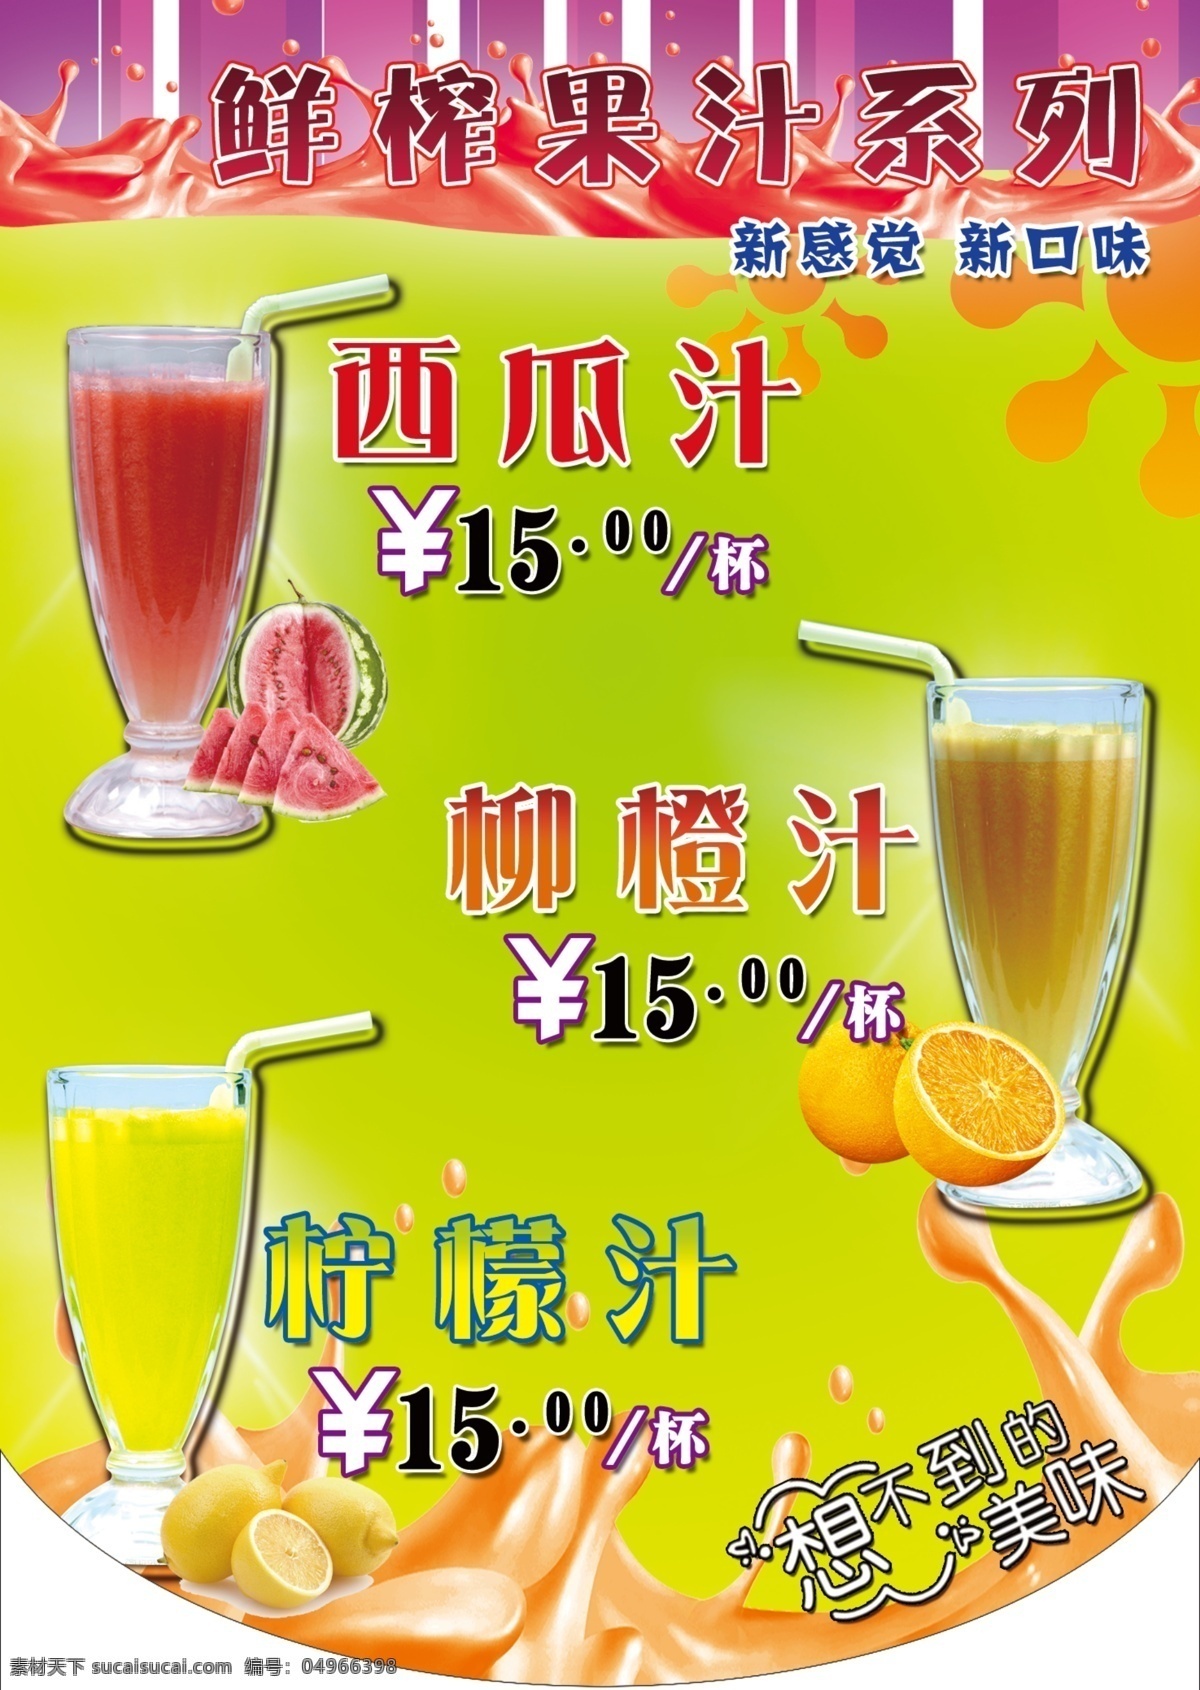 鲜榨果汁系列 绿色背景 西瓜汁 柳橙汁 柠檬汁 奶茶杯 吸管 柠檬 西瓜 广告设计模板 源文件